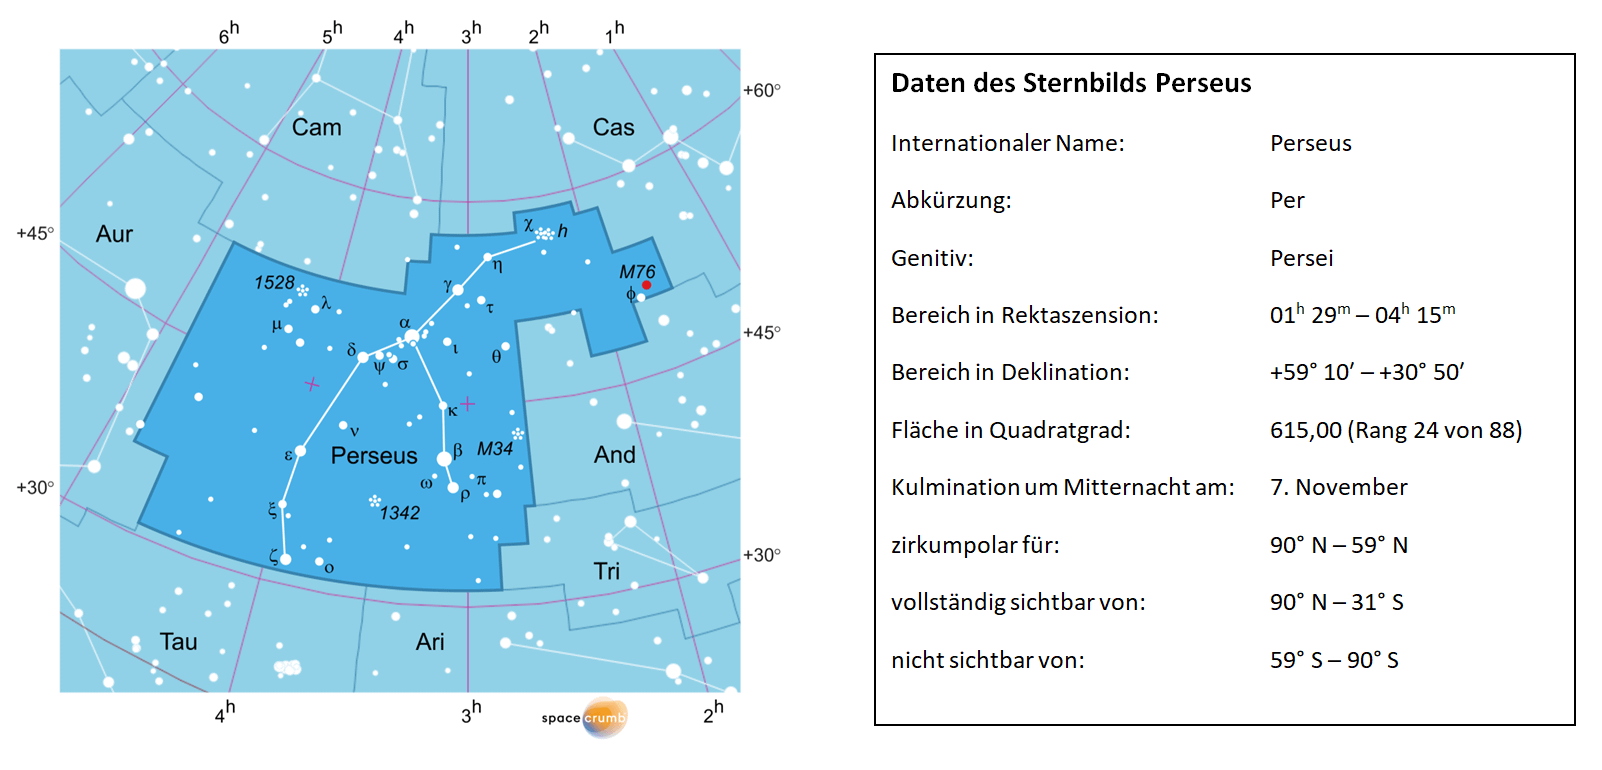 Links zeigt eine mit Koordinaten versehene  Karte eines Himmelsausschnitts weiße Sterne auf hellblauem Hintergrund. Die Fläche, die das Sternbild Perseus einnimmt, ist dunkelblau hervorgehoben. Eine Tabelle rechts gibt wichtige Daten des Sternbilds Perseus an.